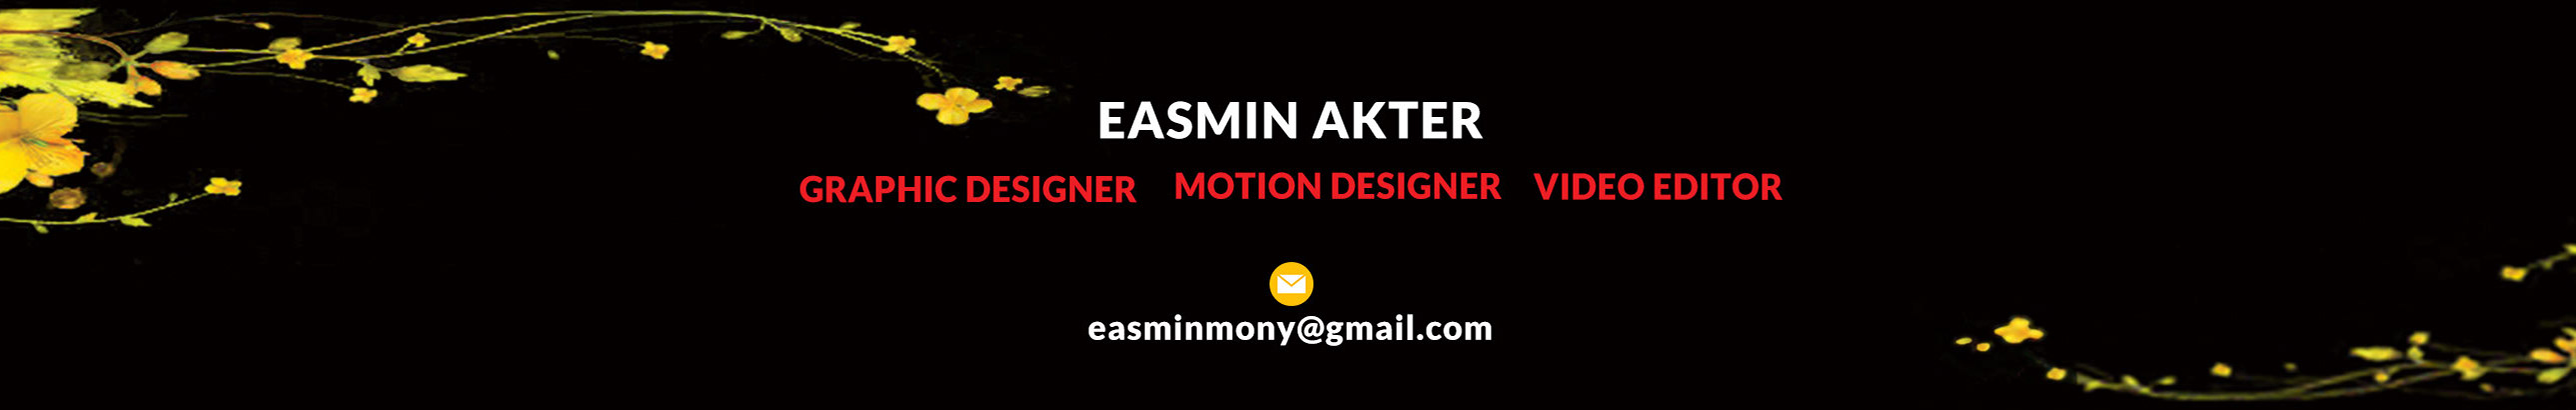 EASMIN AKTER's profile banner